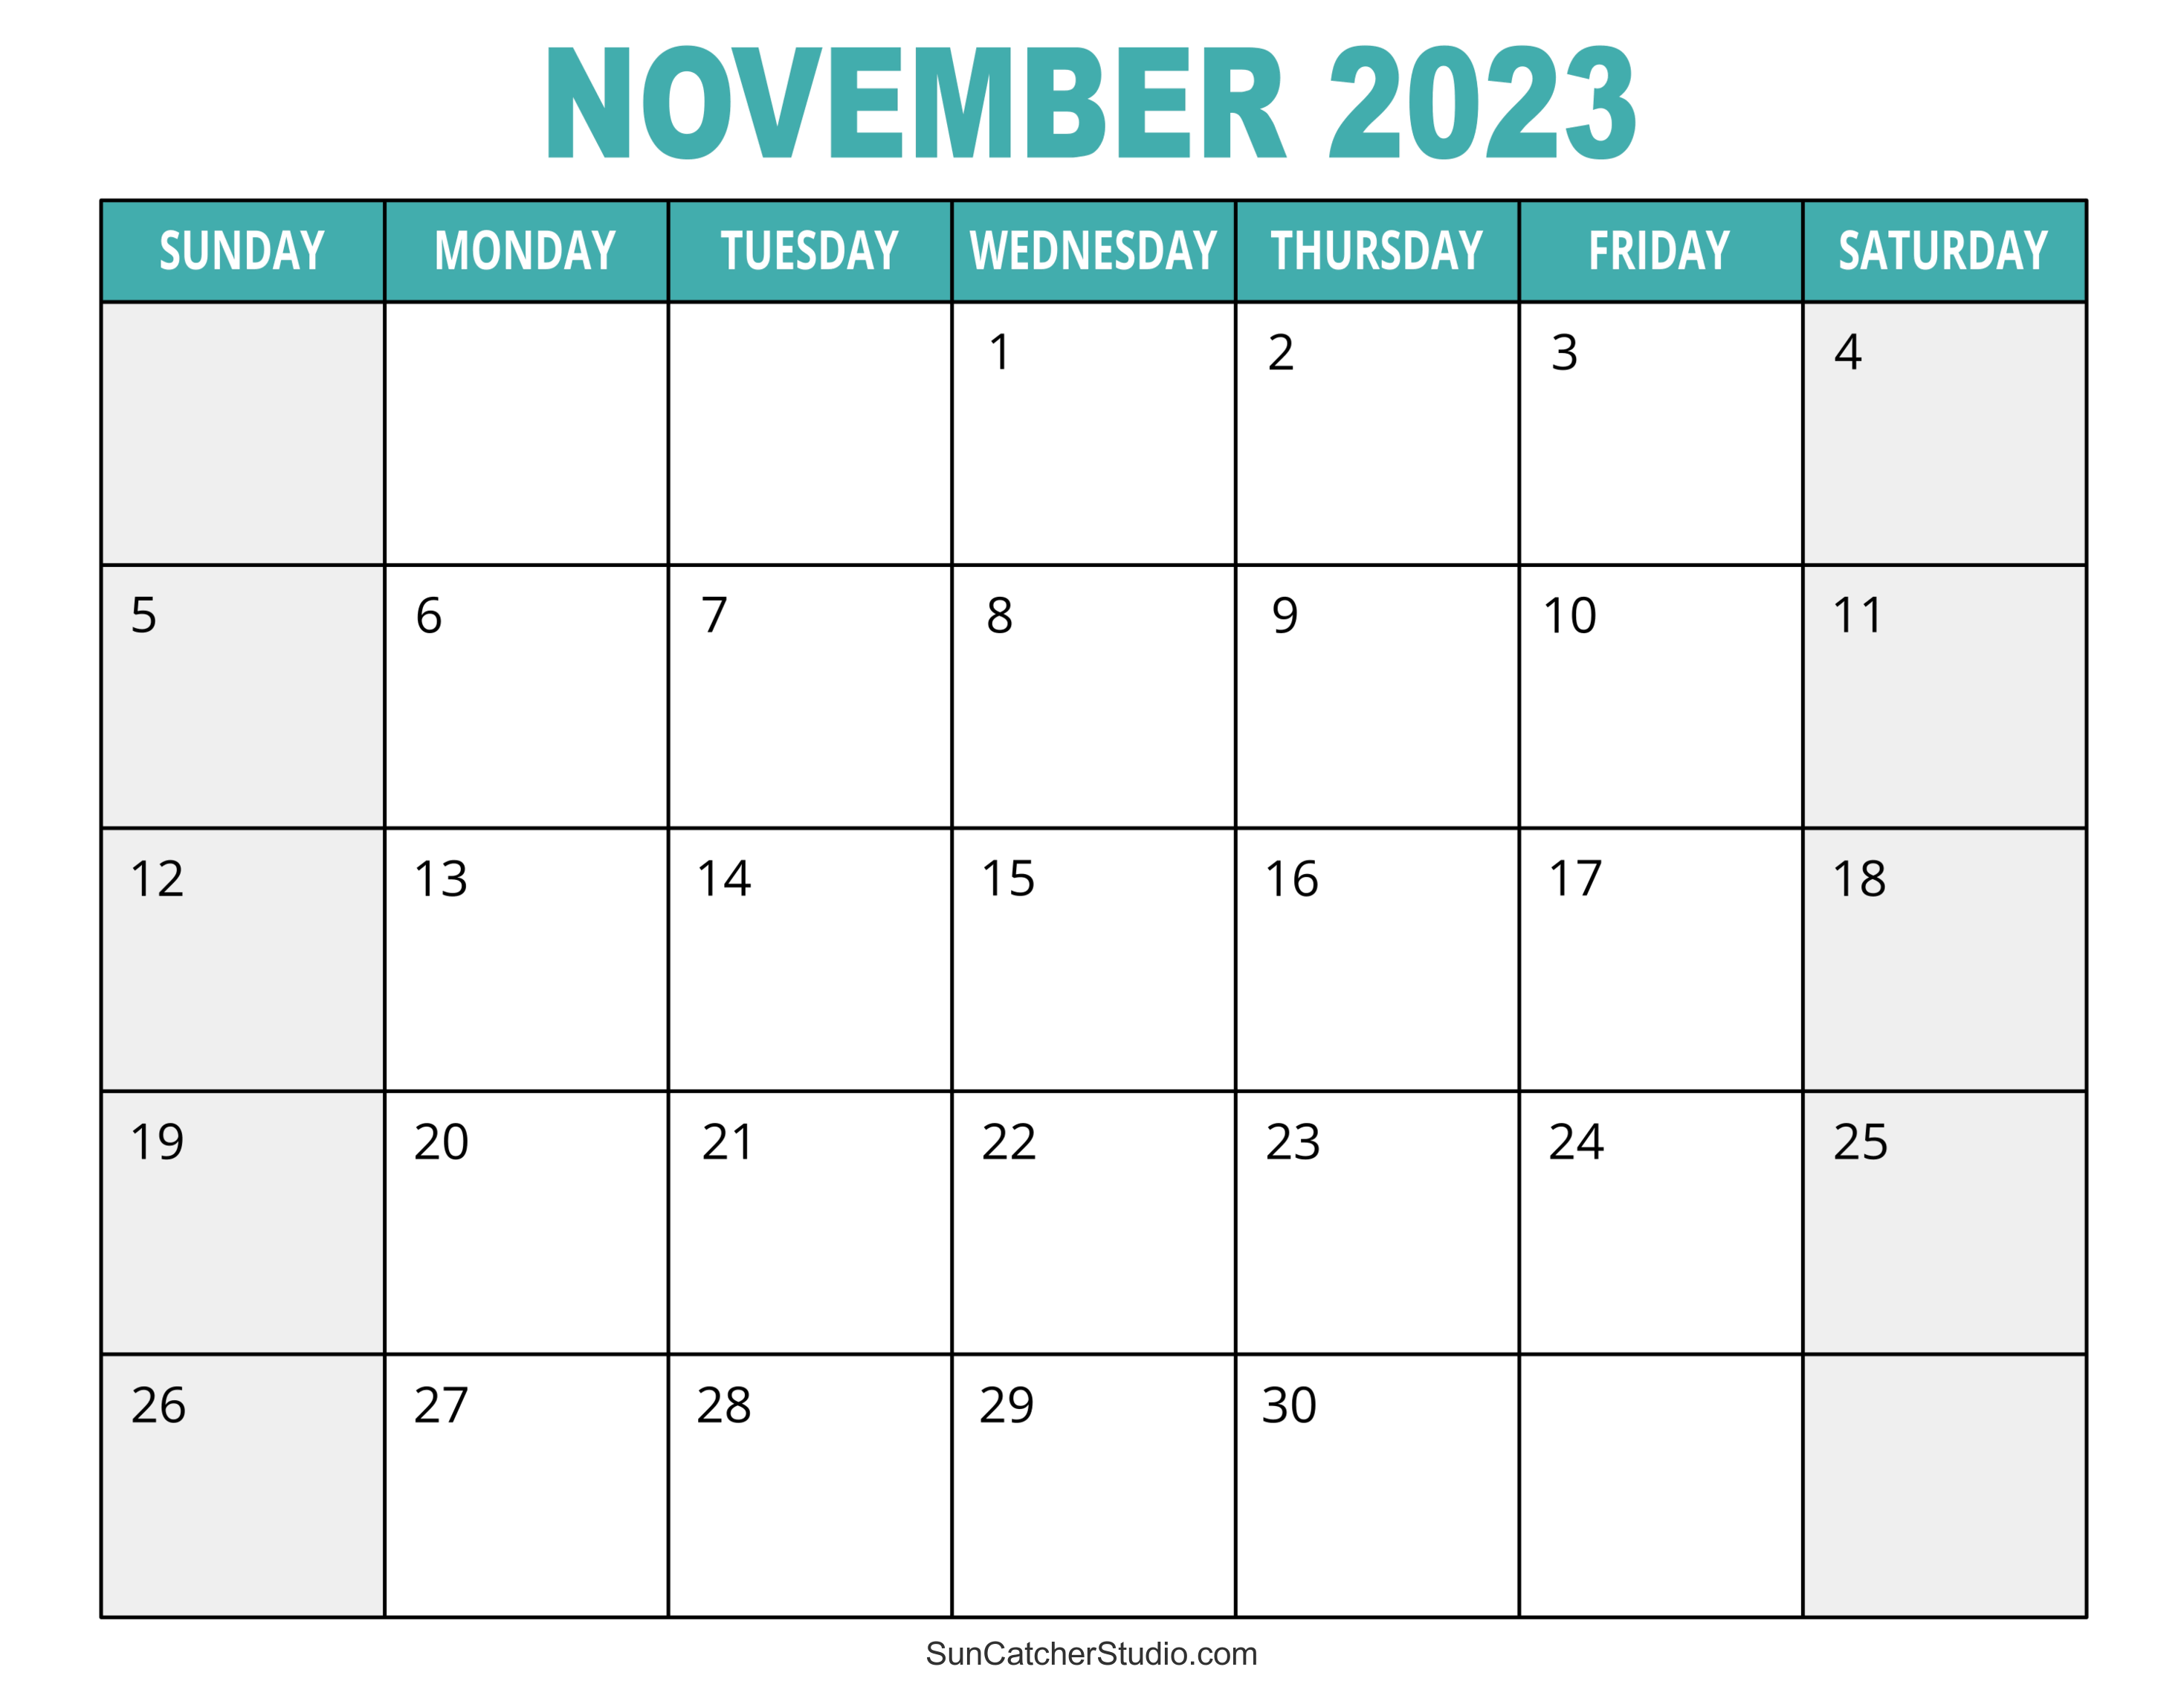 November, 2023